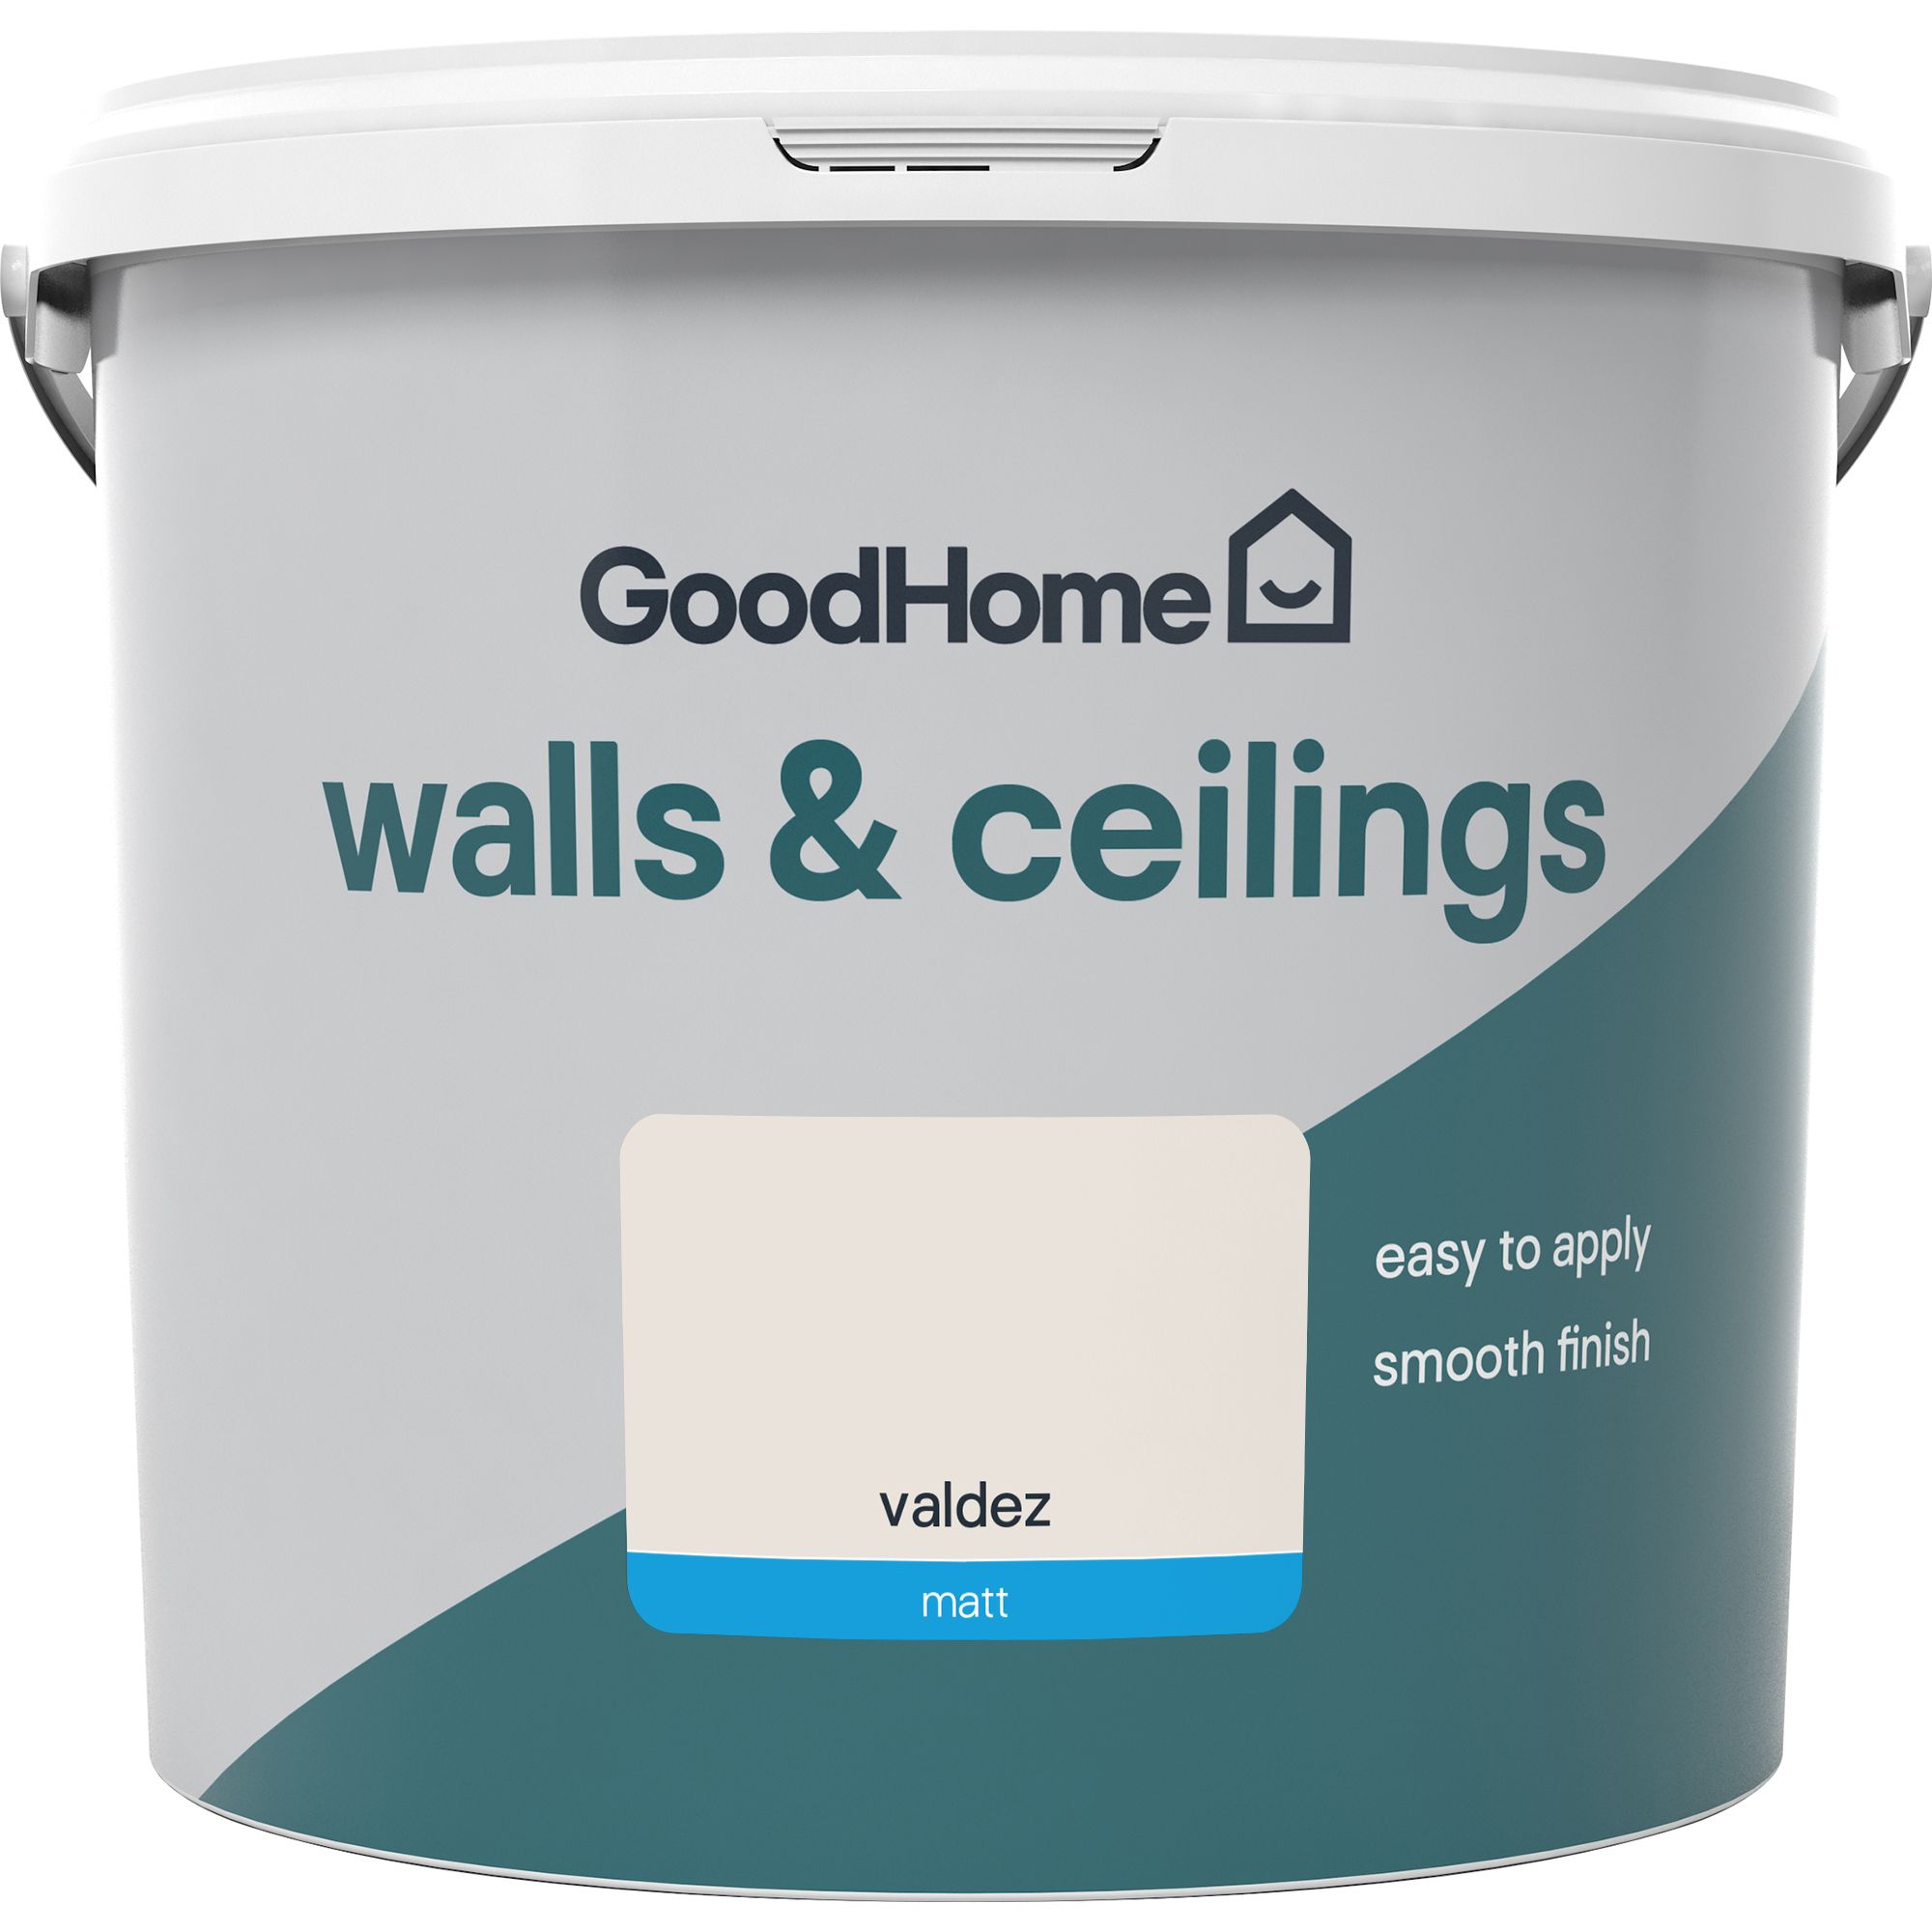 GoodHome Walls & ceilings Valdez Matt Emulsion paint, 5L